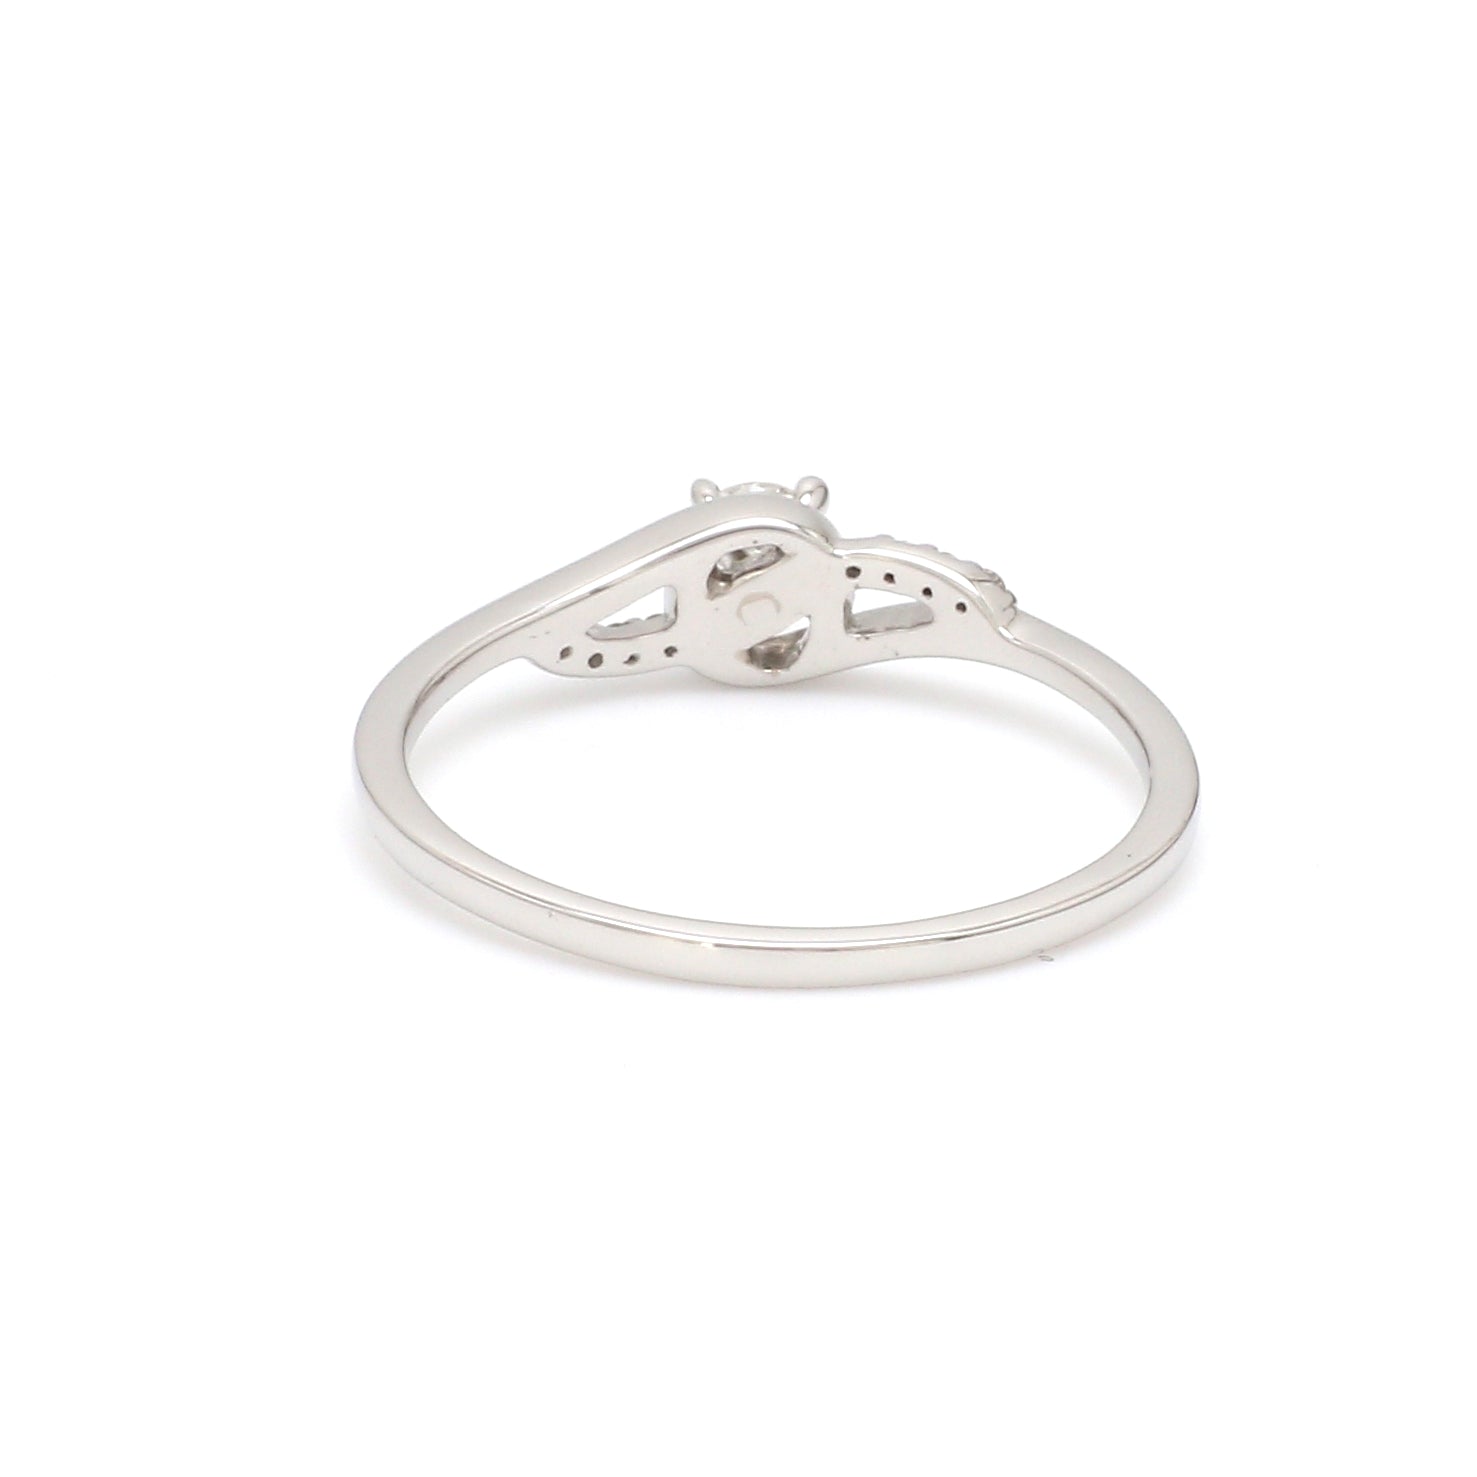 Designer Platinum Solitaire Ring with Diamond Accents JL PT 969   Jewelove.US